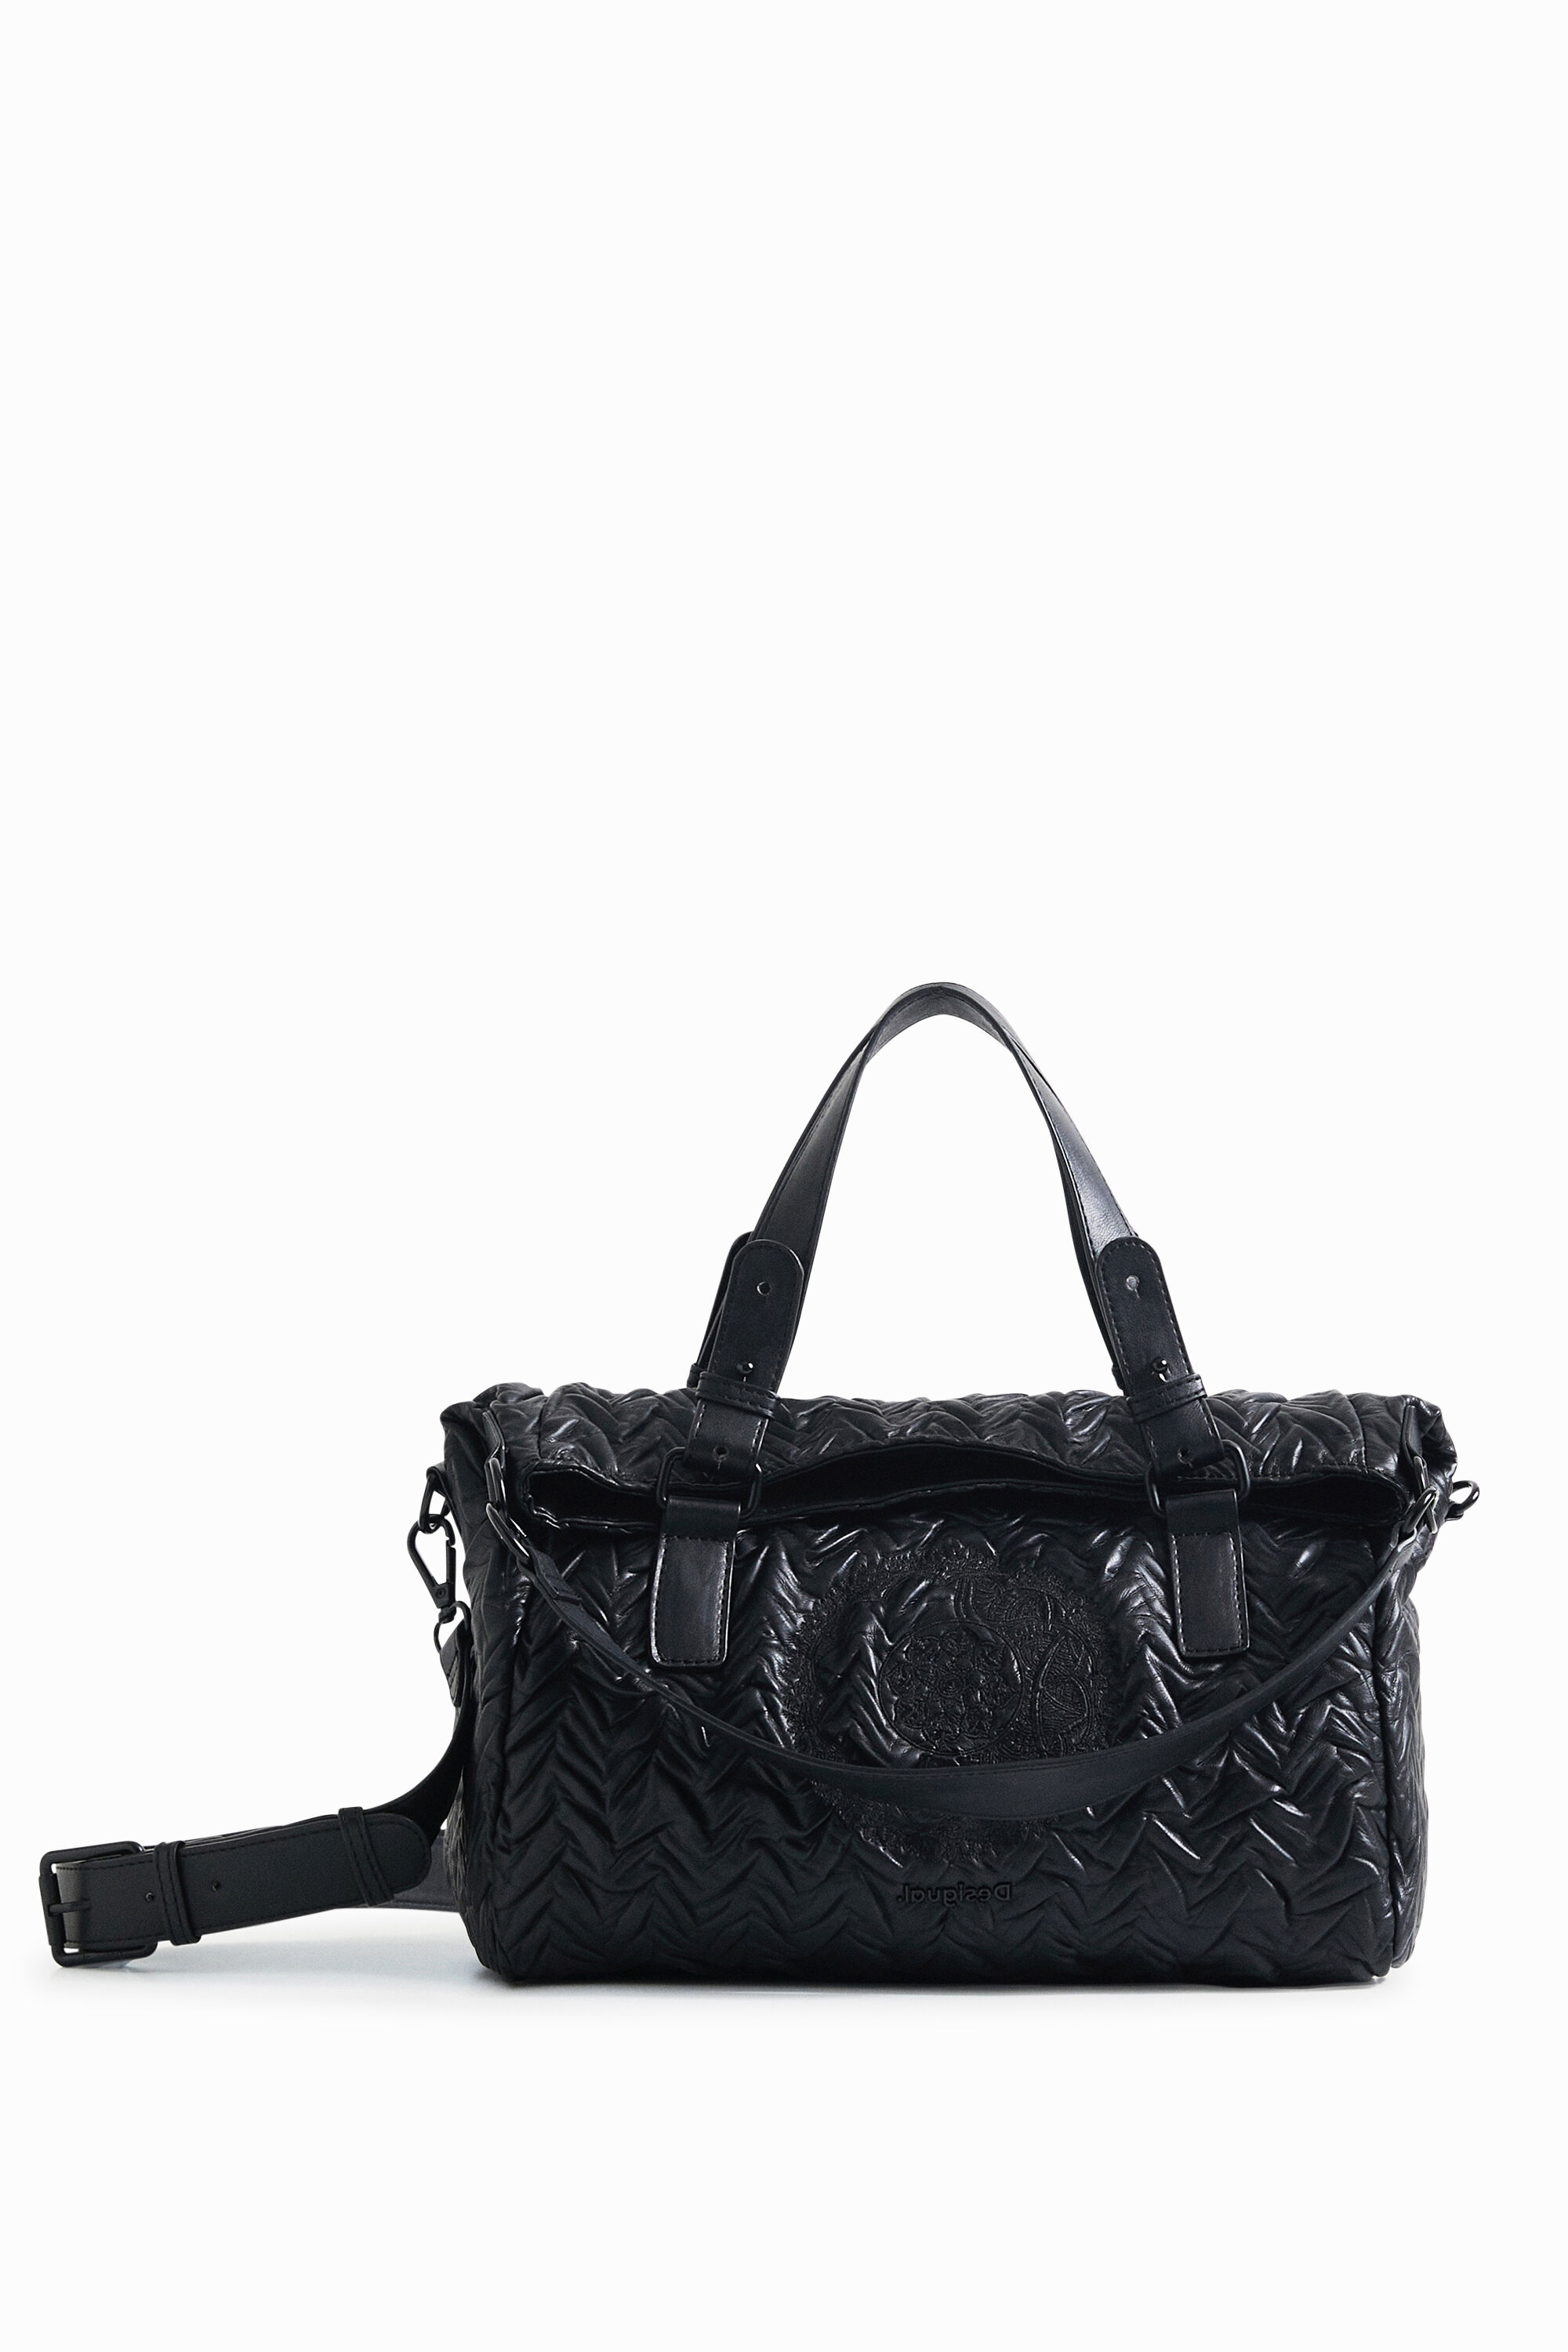 Desigual Leather Effect Handbag Smartphone Holder In Black